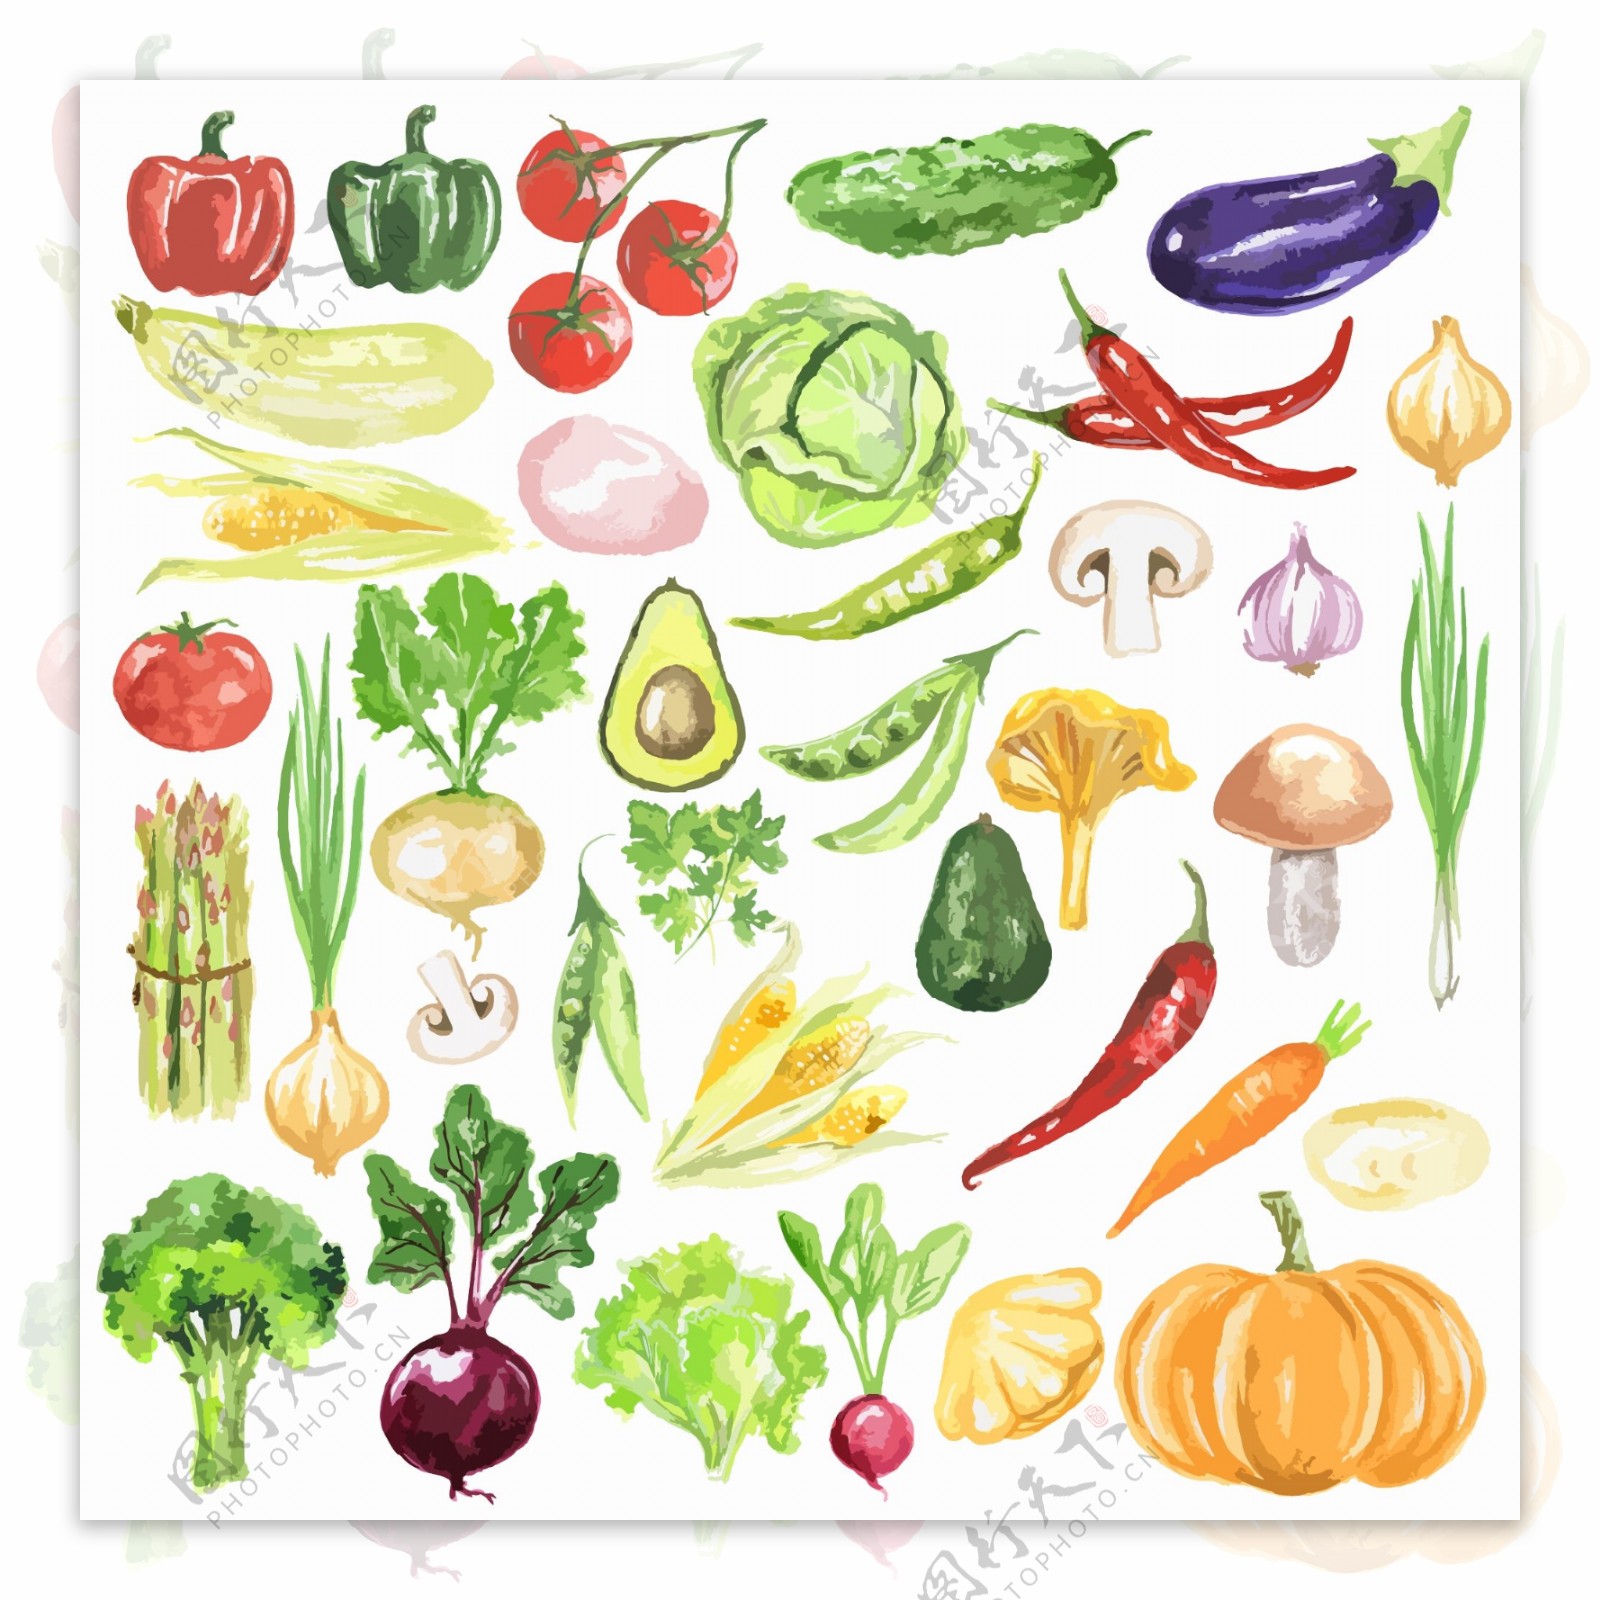 蔬菜西红柿花椰菜素描手绘水果矢量图